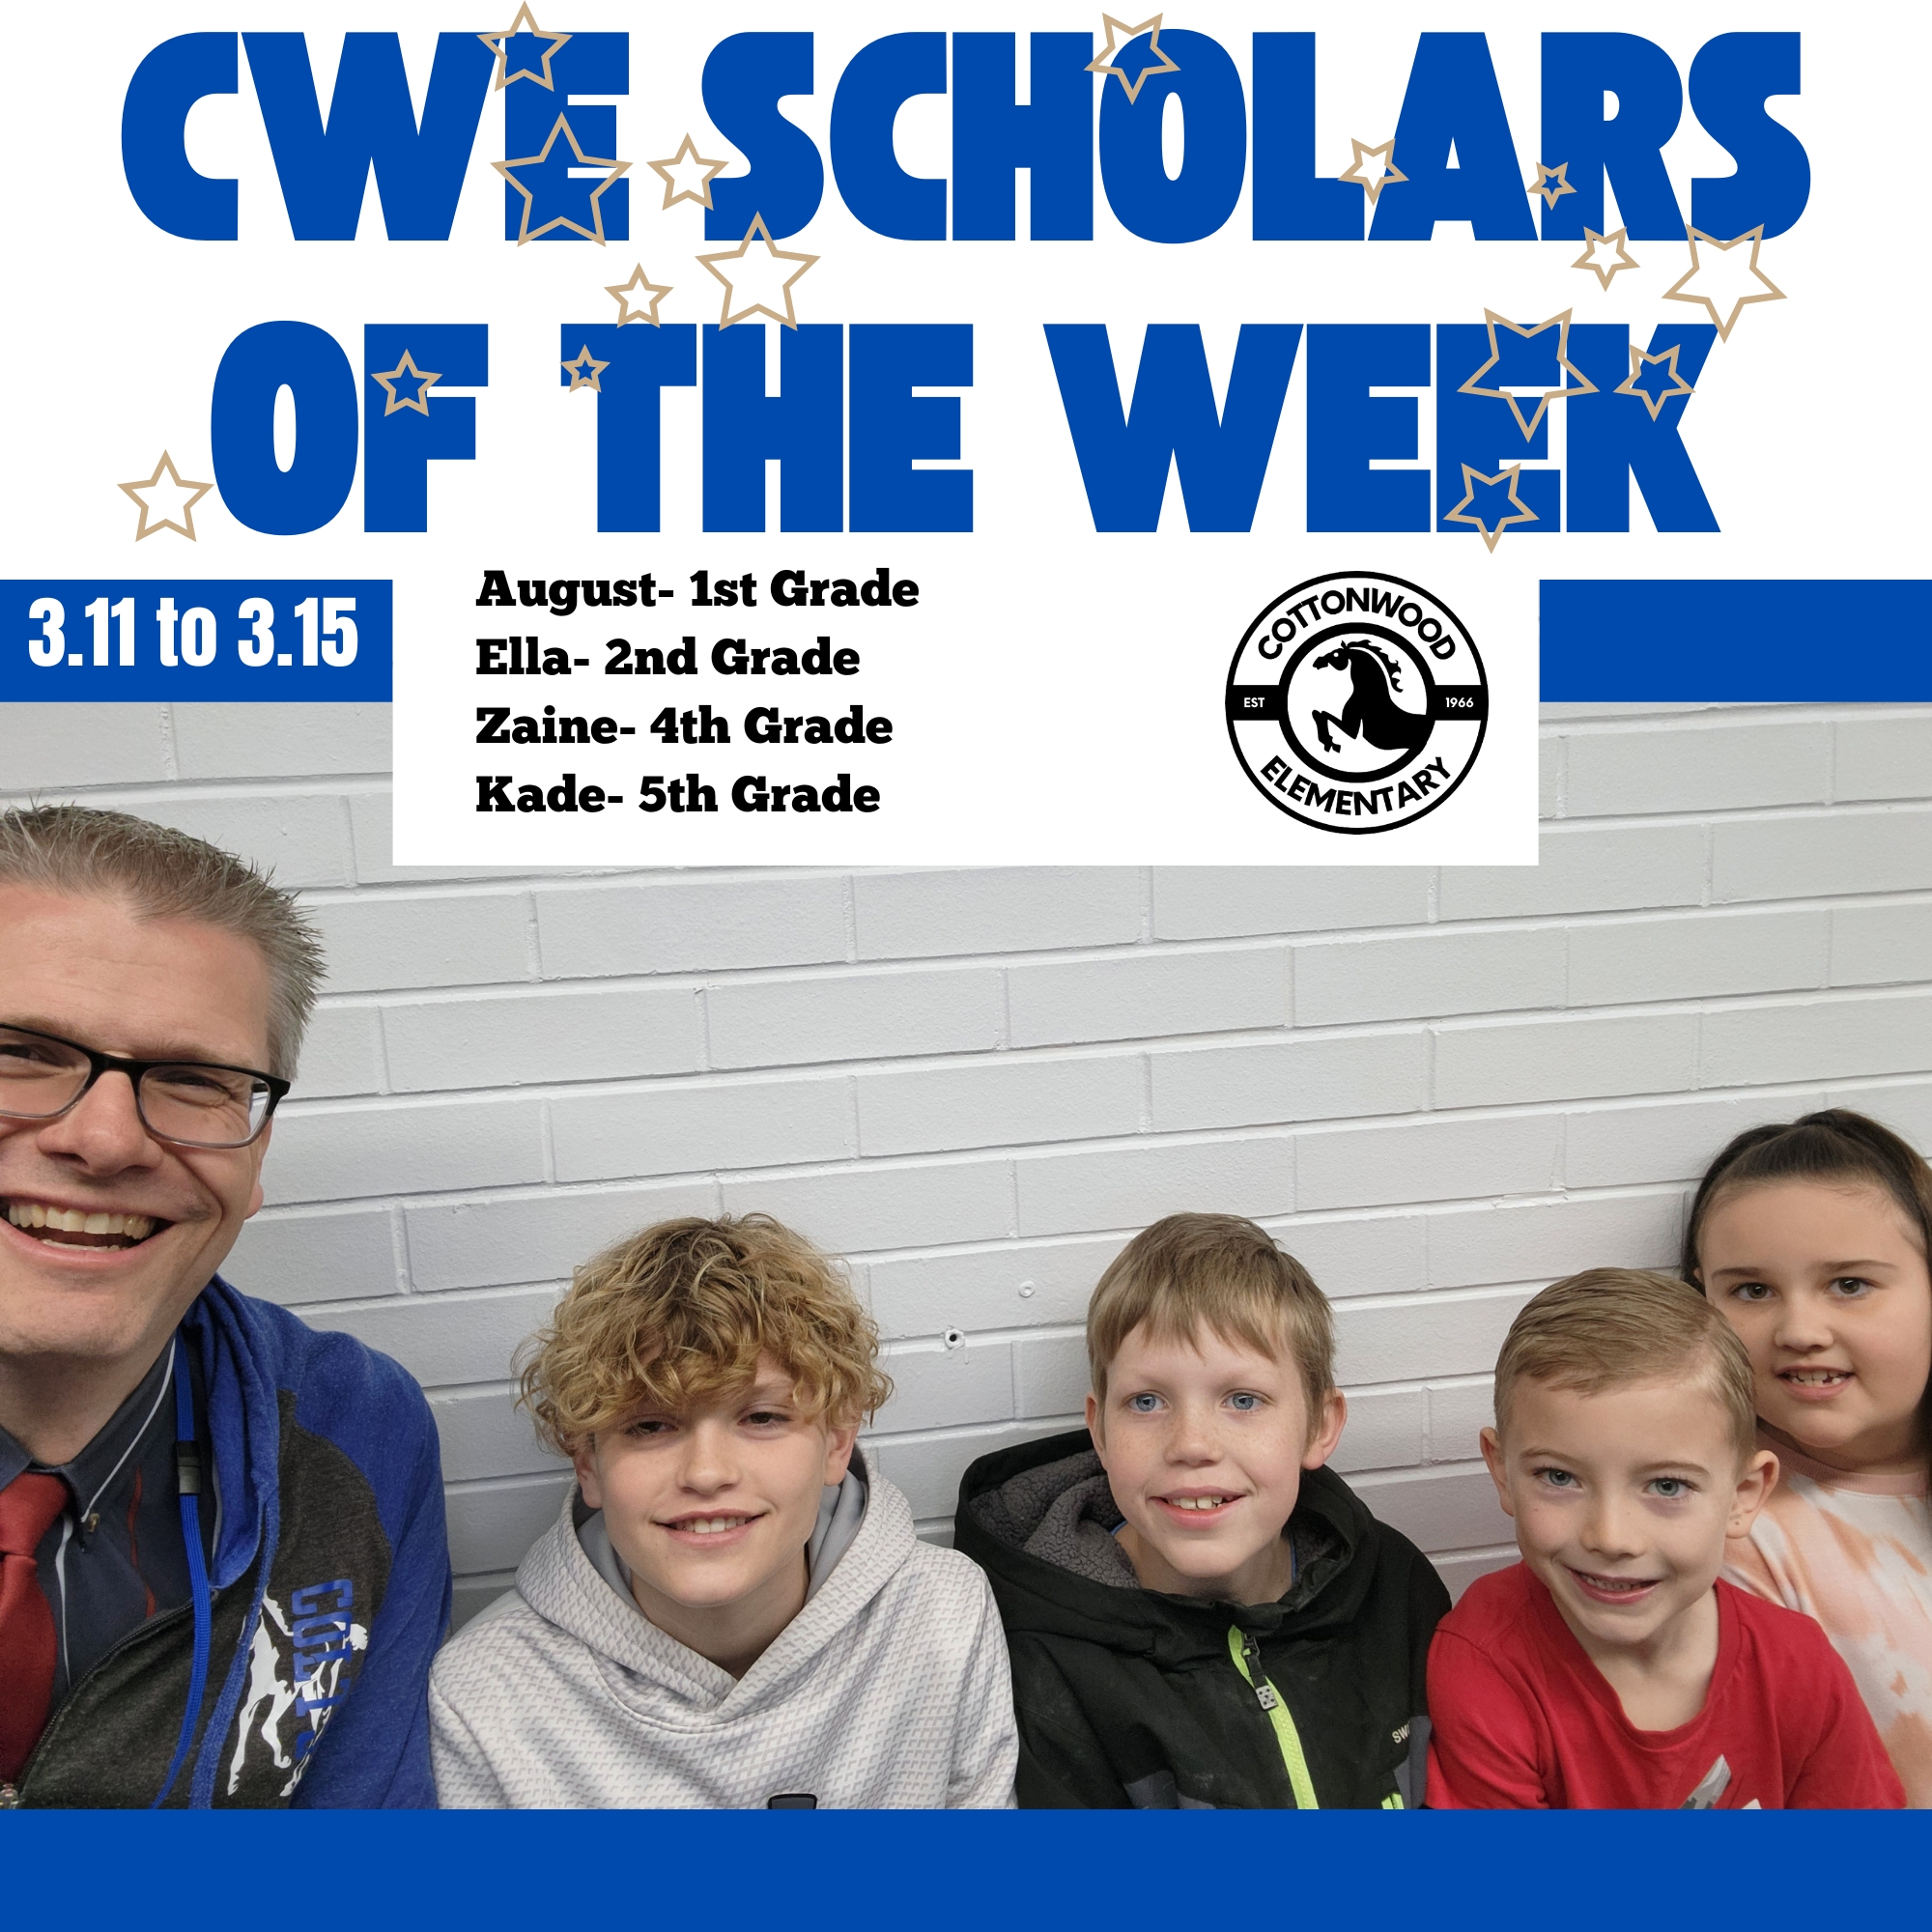 CWE-Scholars-of-the-Week-3.11-to-3.15.jpg